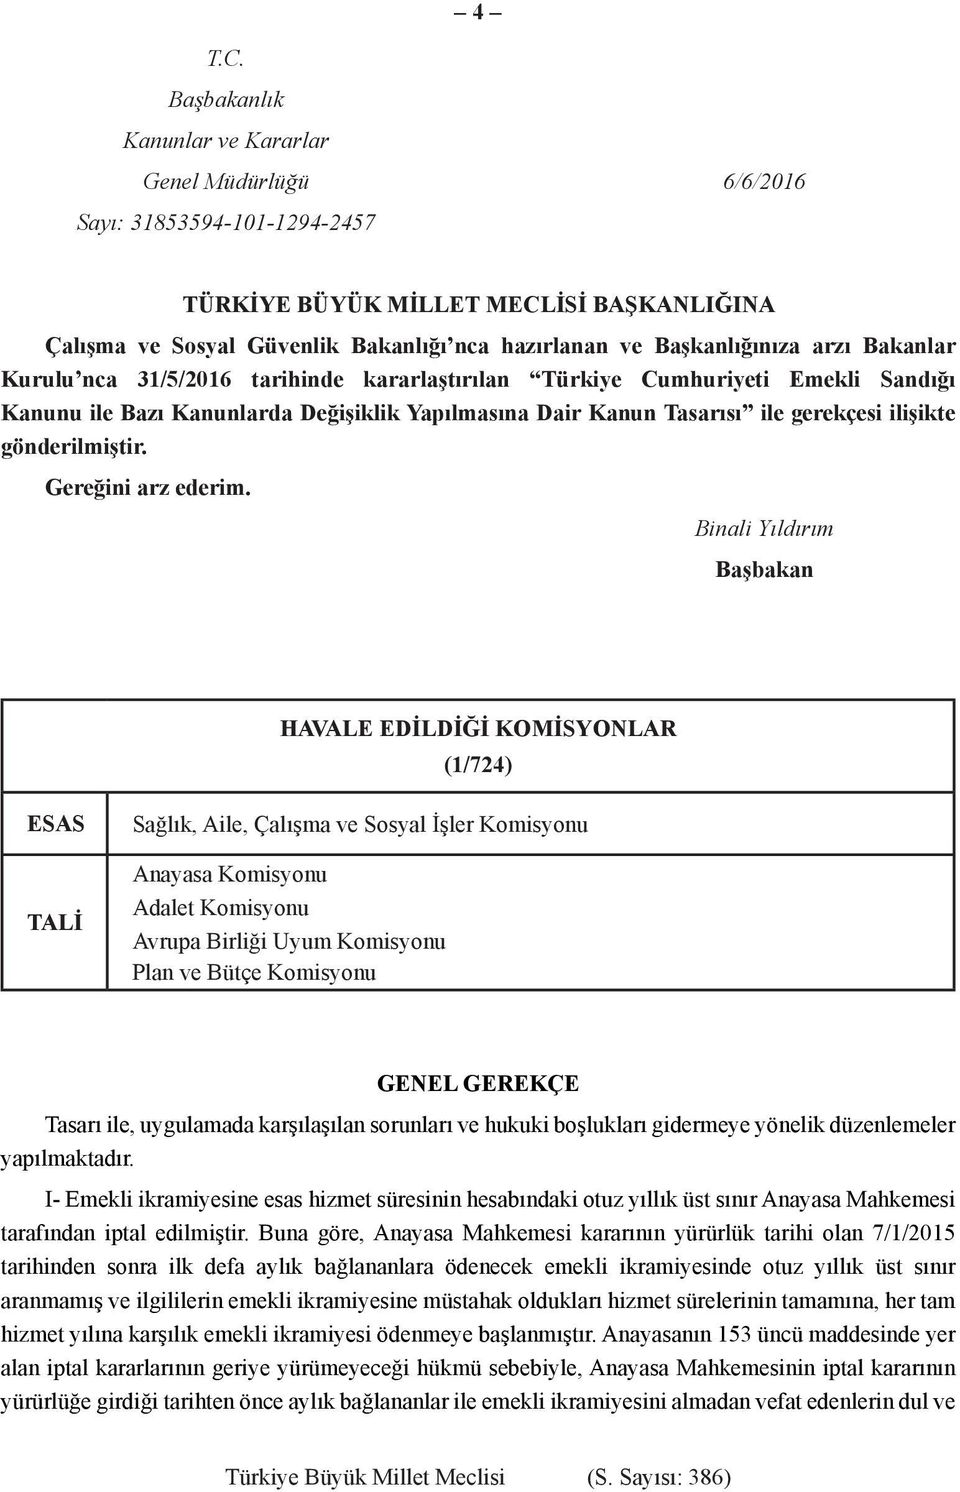 Başkanlığınıza arzı Bakanlar Kurulu nca 31/5/2016 tarihinde kararlaştırılan Türkiye Cumhuriyeti Emekli Sandığı Kanunu ile Bazı Kanunlarda Değişiklik Yapılmasına Dair Kanun Tasarısı ile gerekçesi